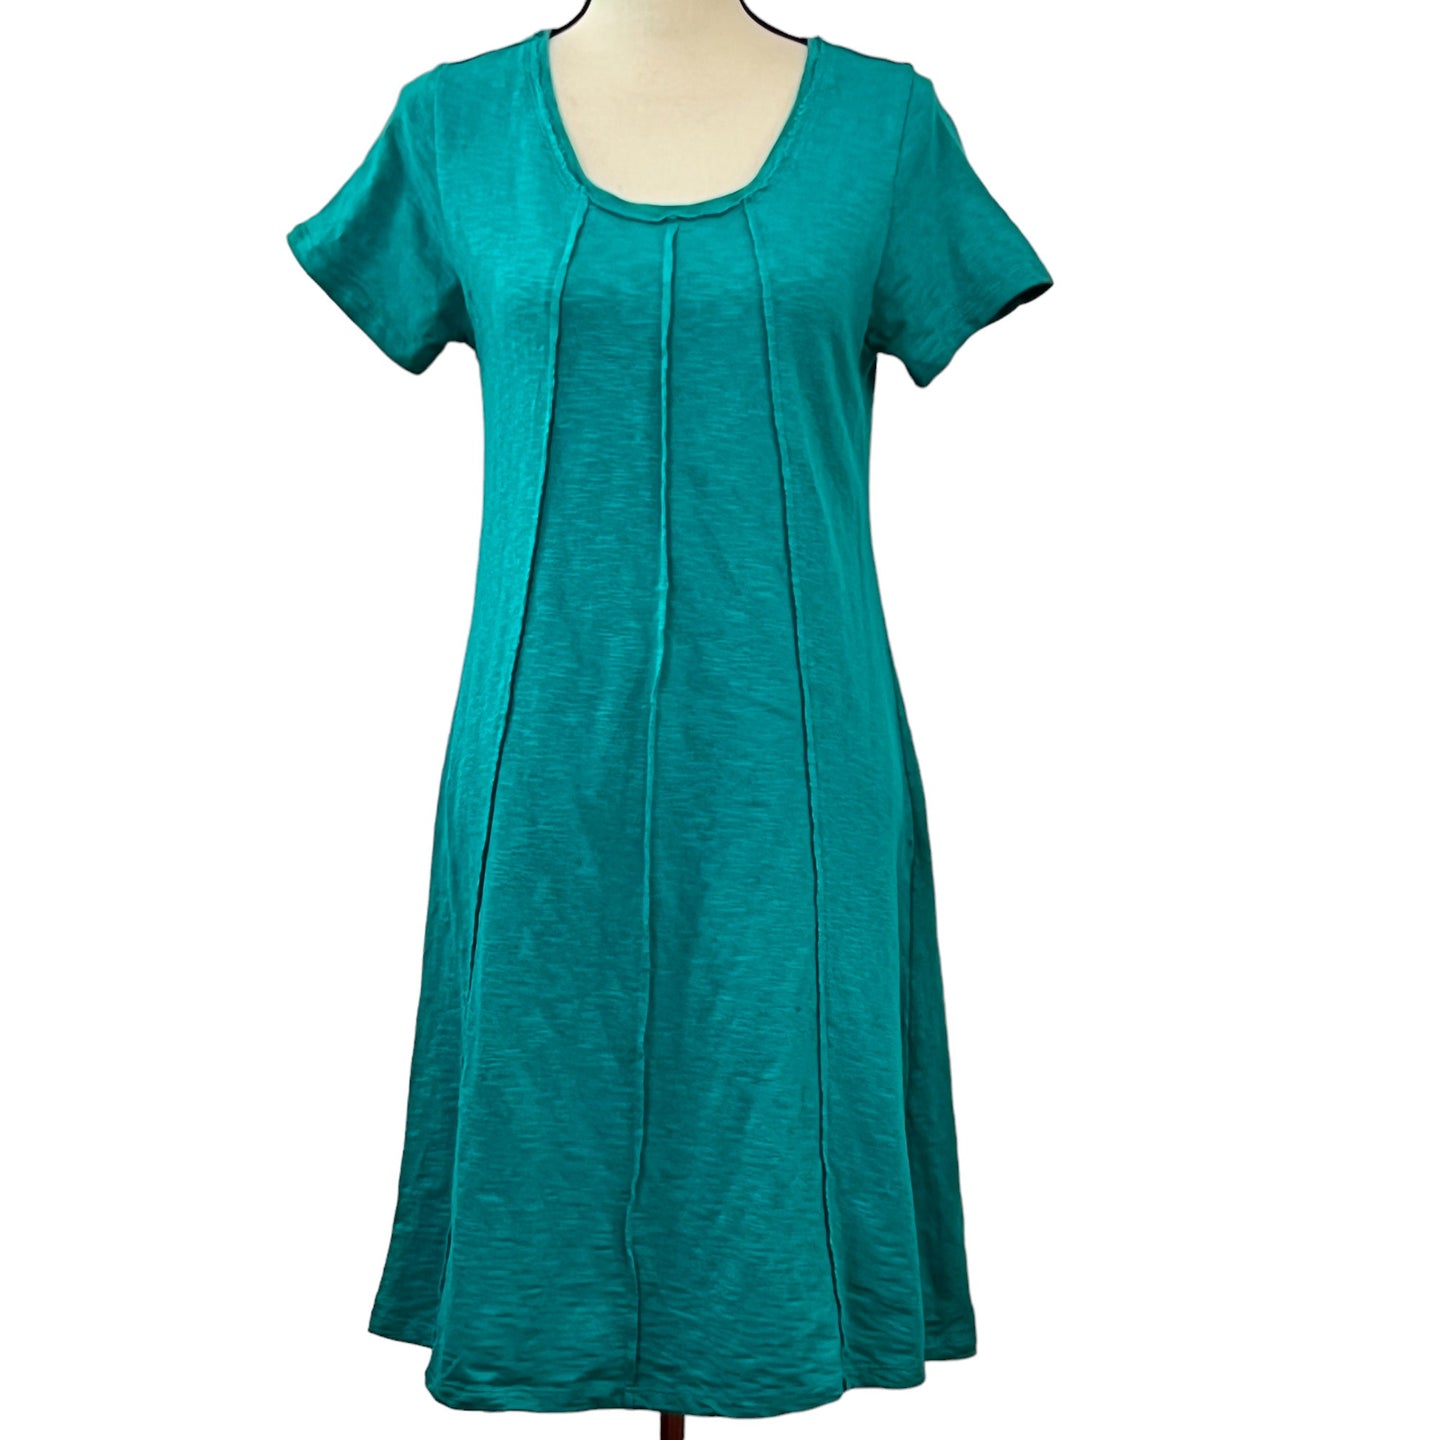 Soft Surroundings 100% Cotton T-Shirt Size Dress Size Small